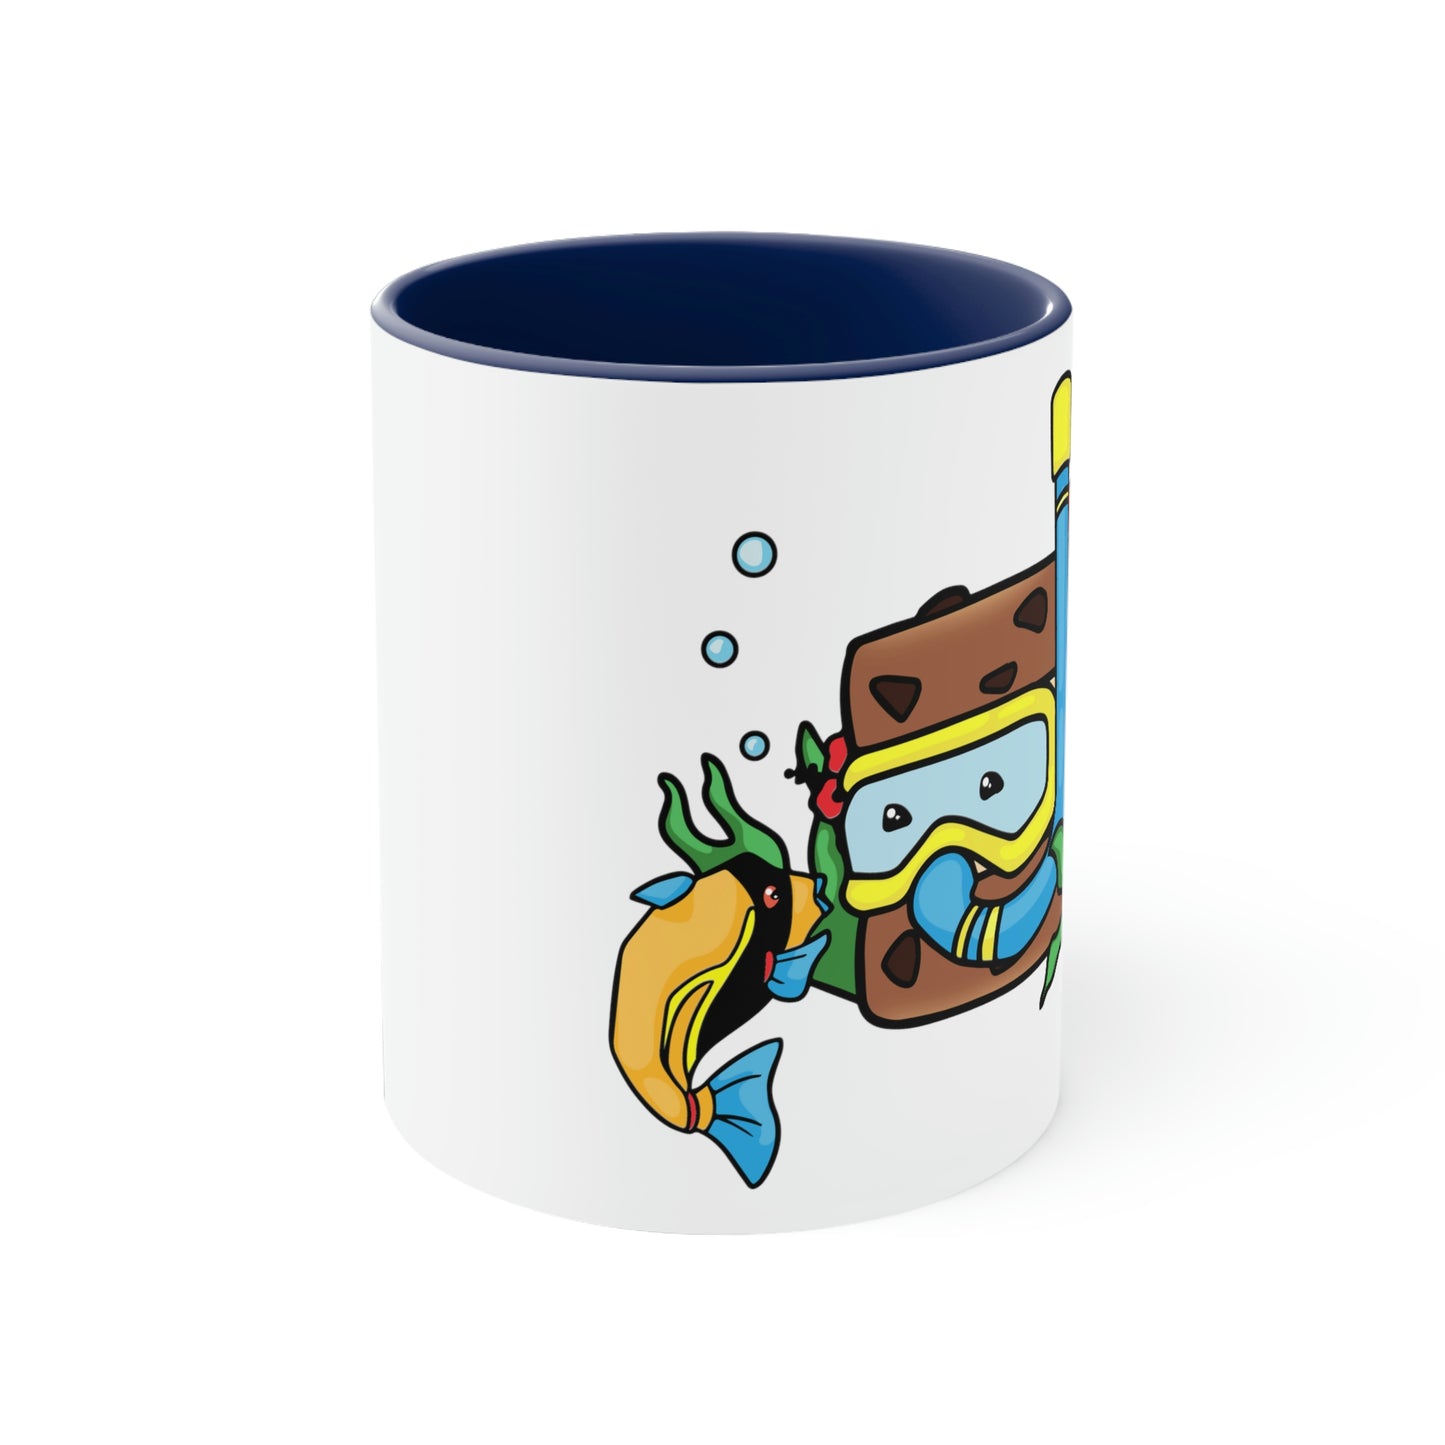 Snorkin' Sammie Coffee Mug, 11 oz